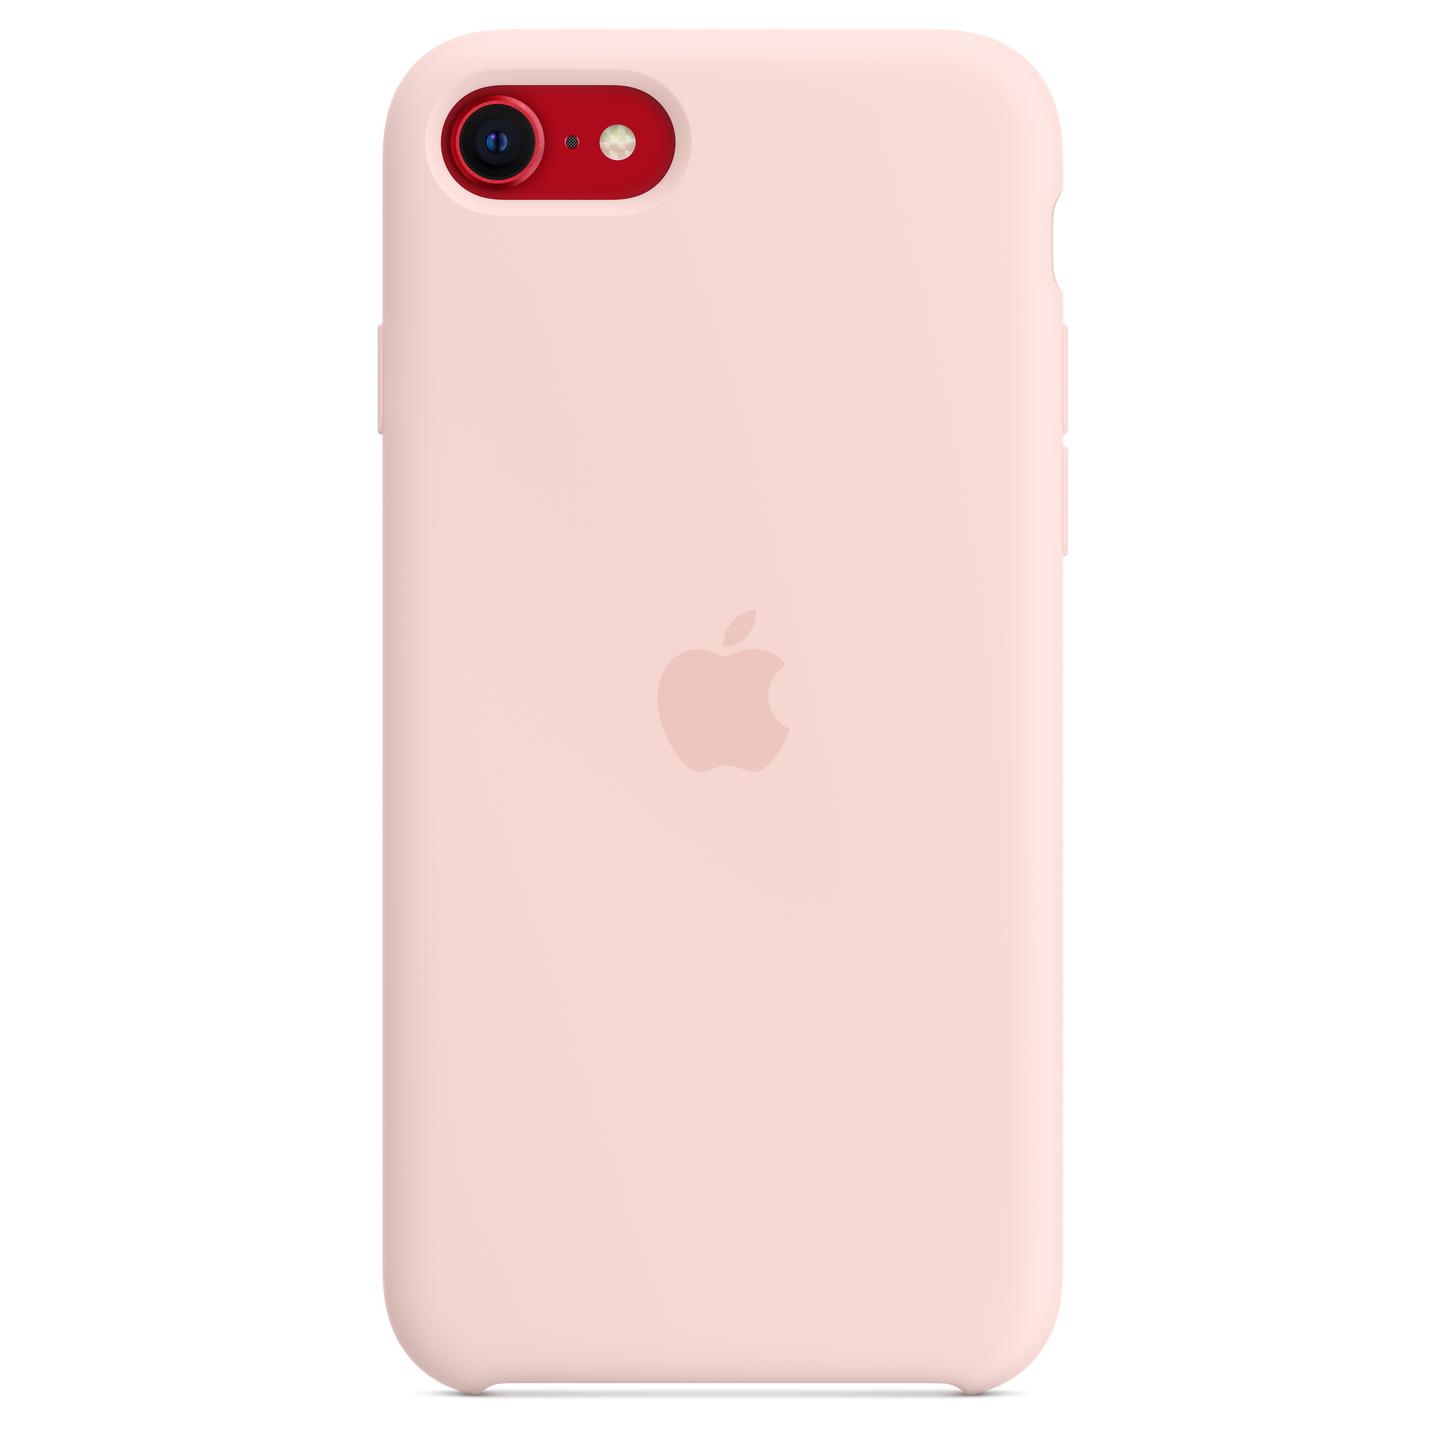 Funda de silicona para el iPhone SE - Rosa caliza - Rossellimac